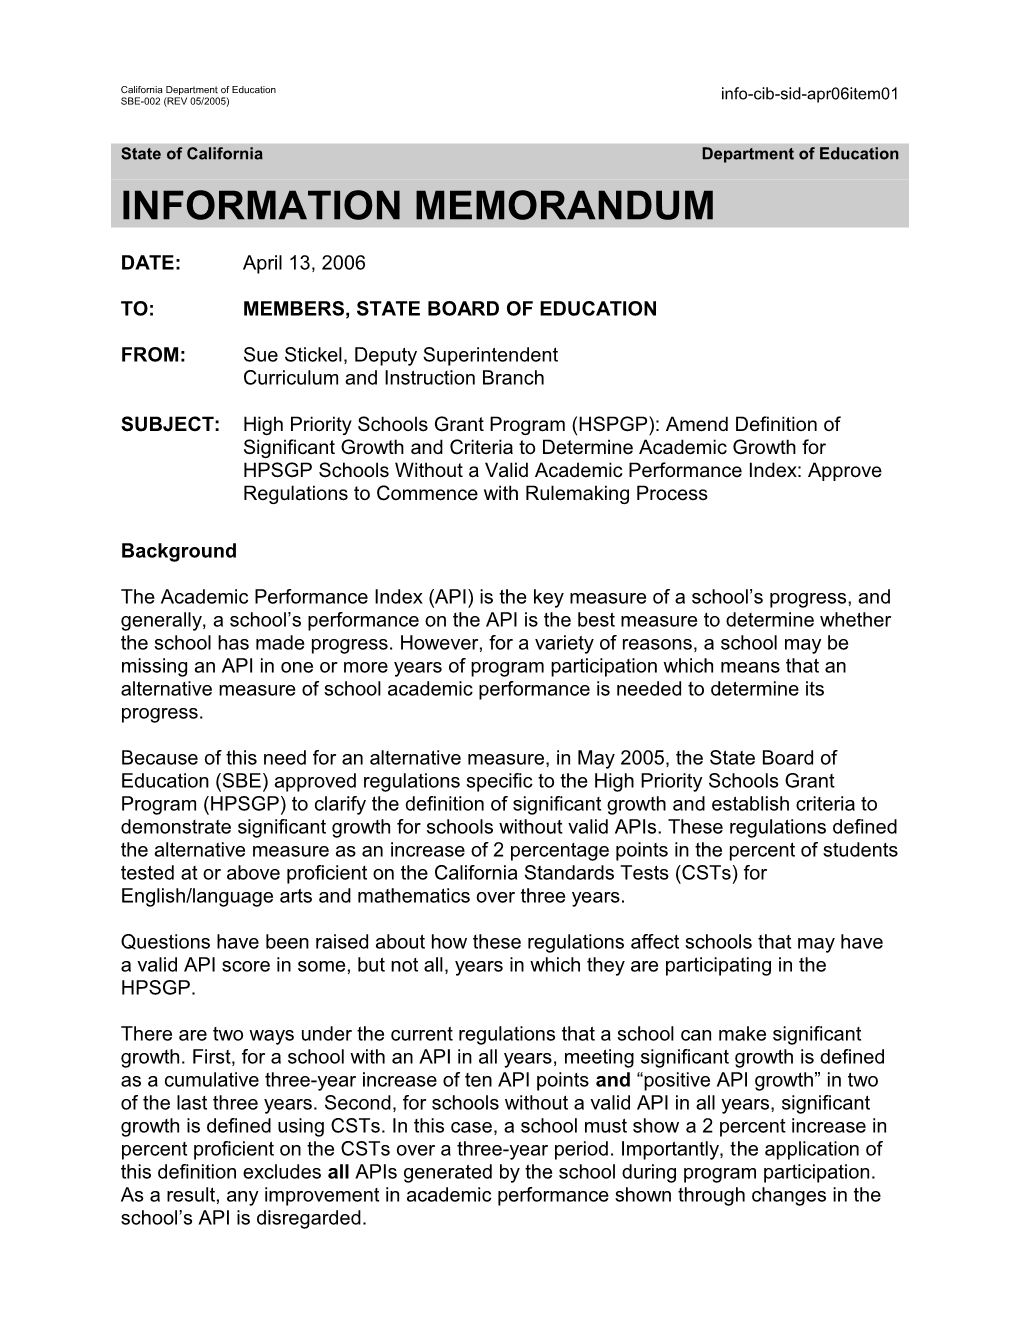 April 2006 SID Item 1 - Information Memorandum (CA State Board of Education)